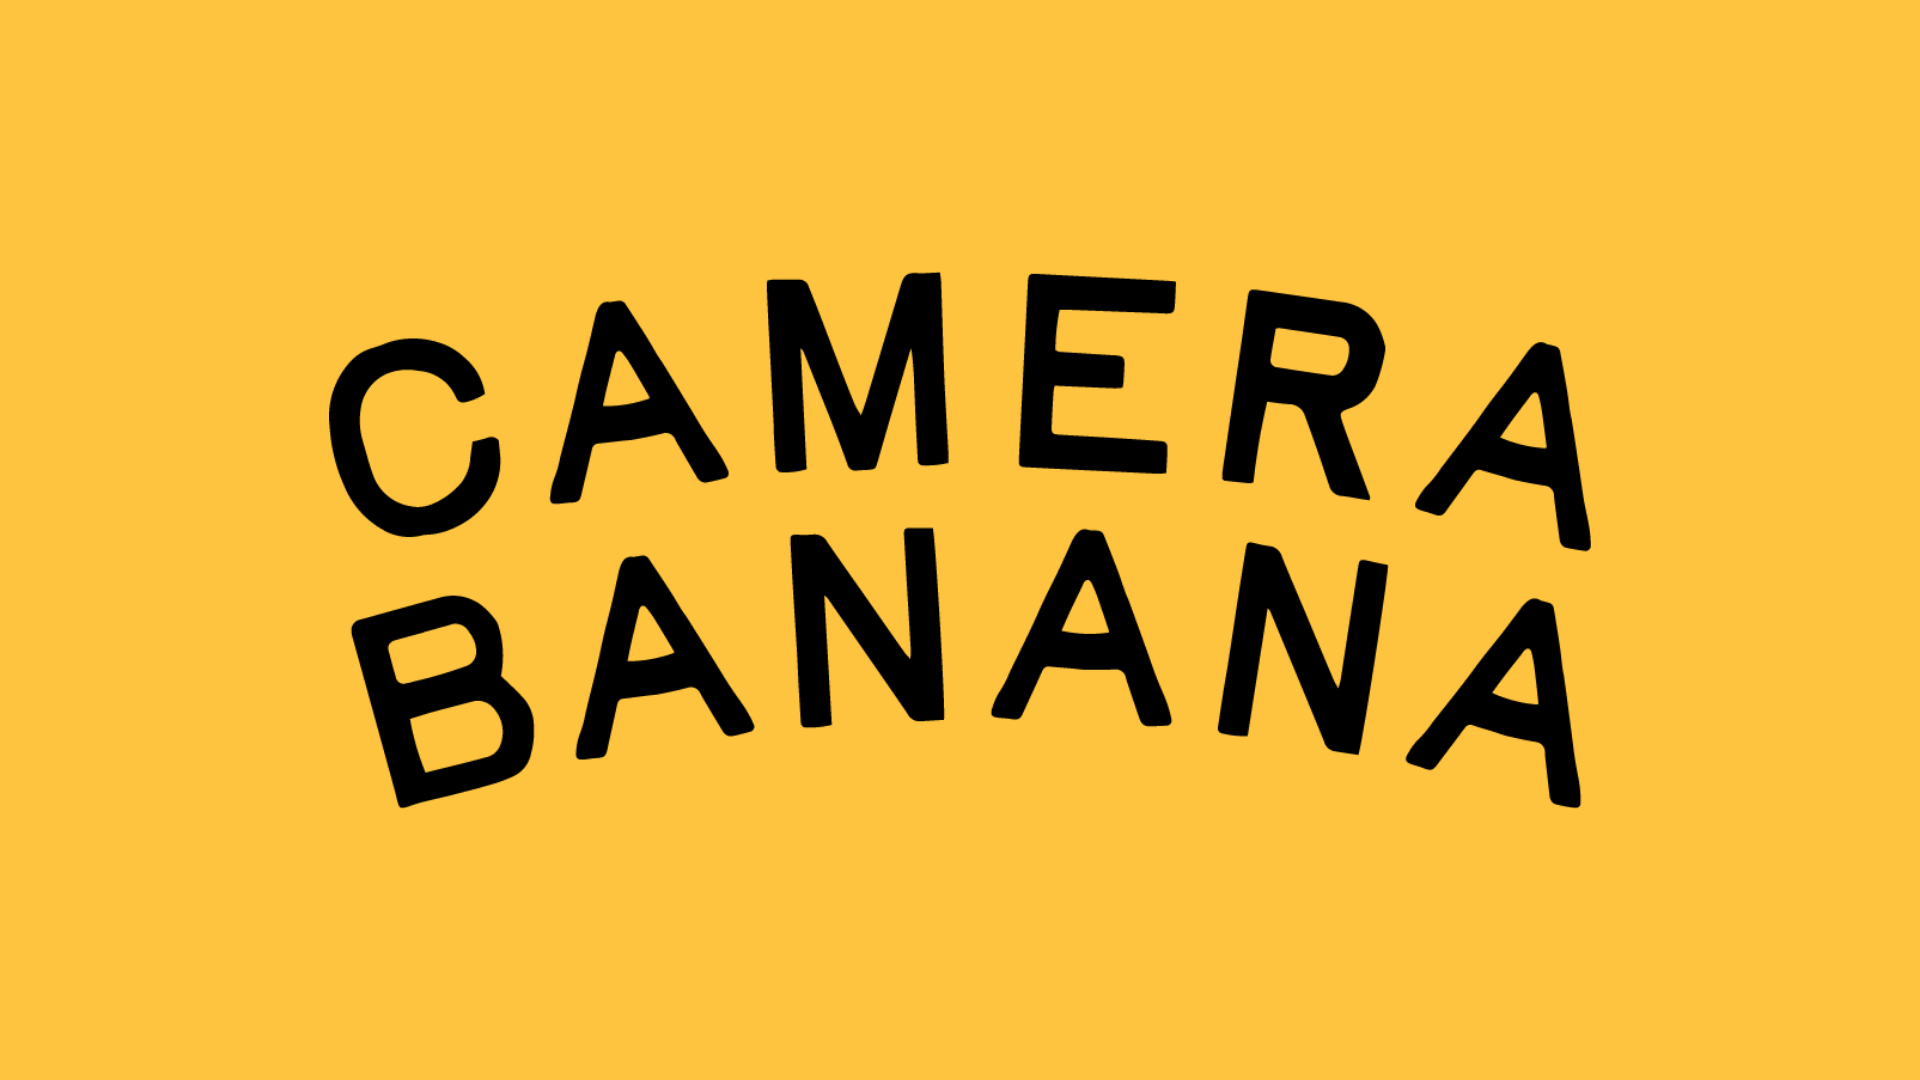 Camera banana logo